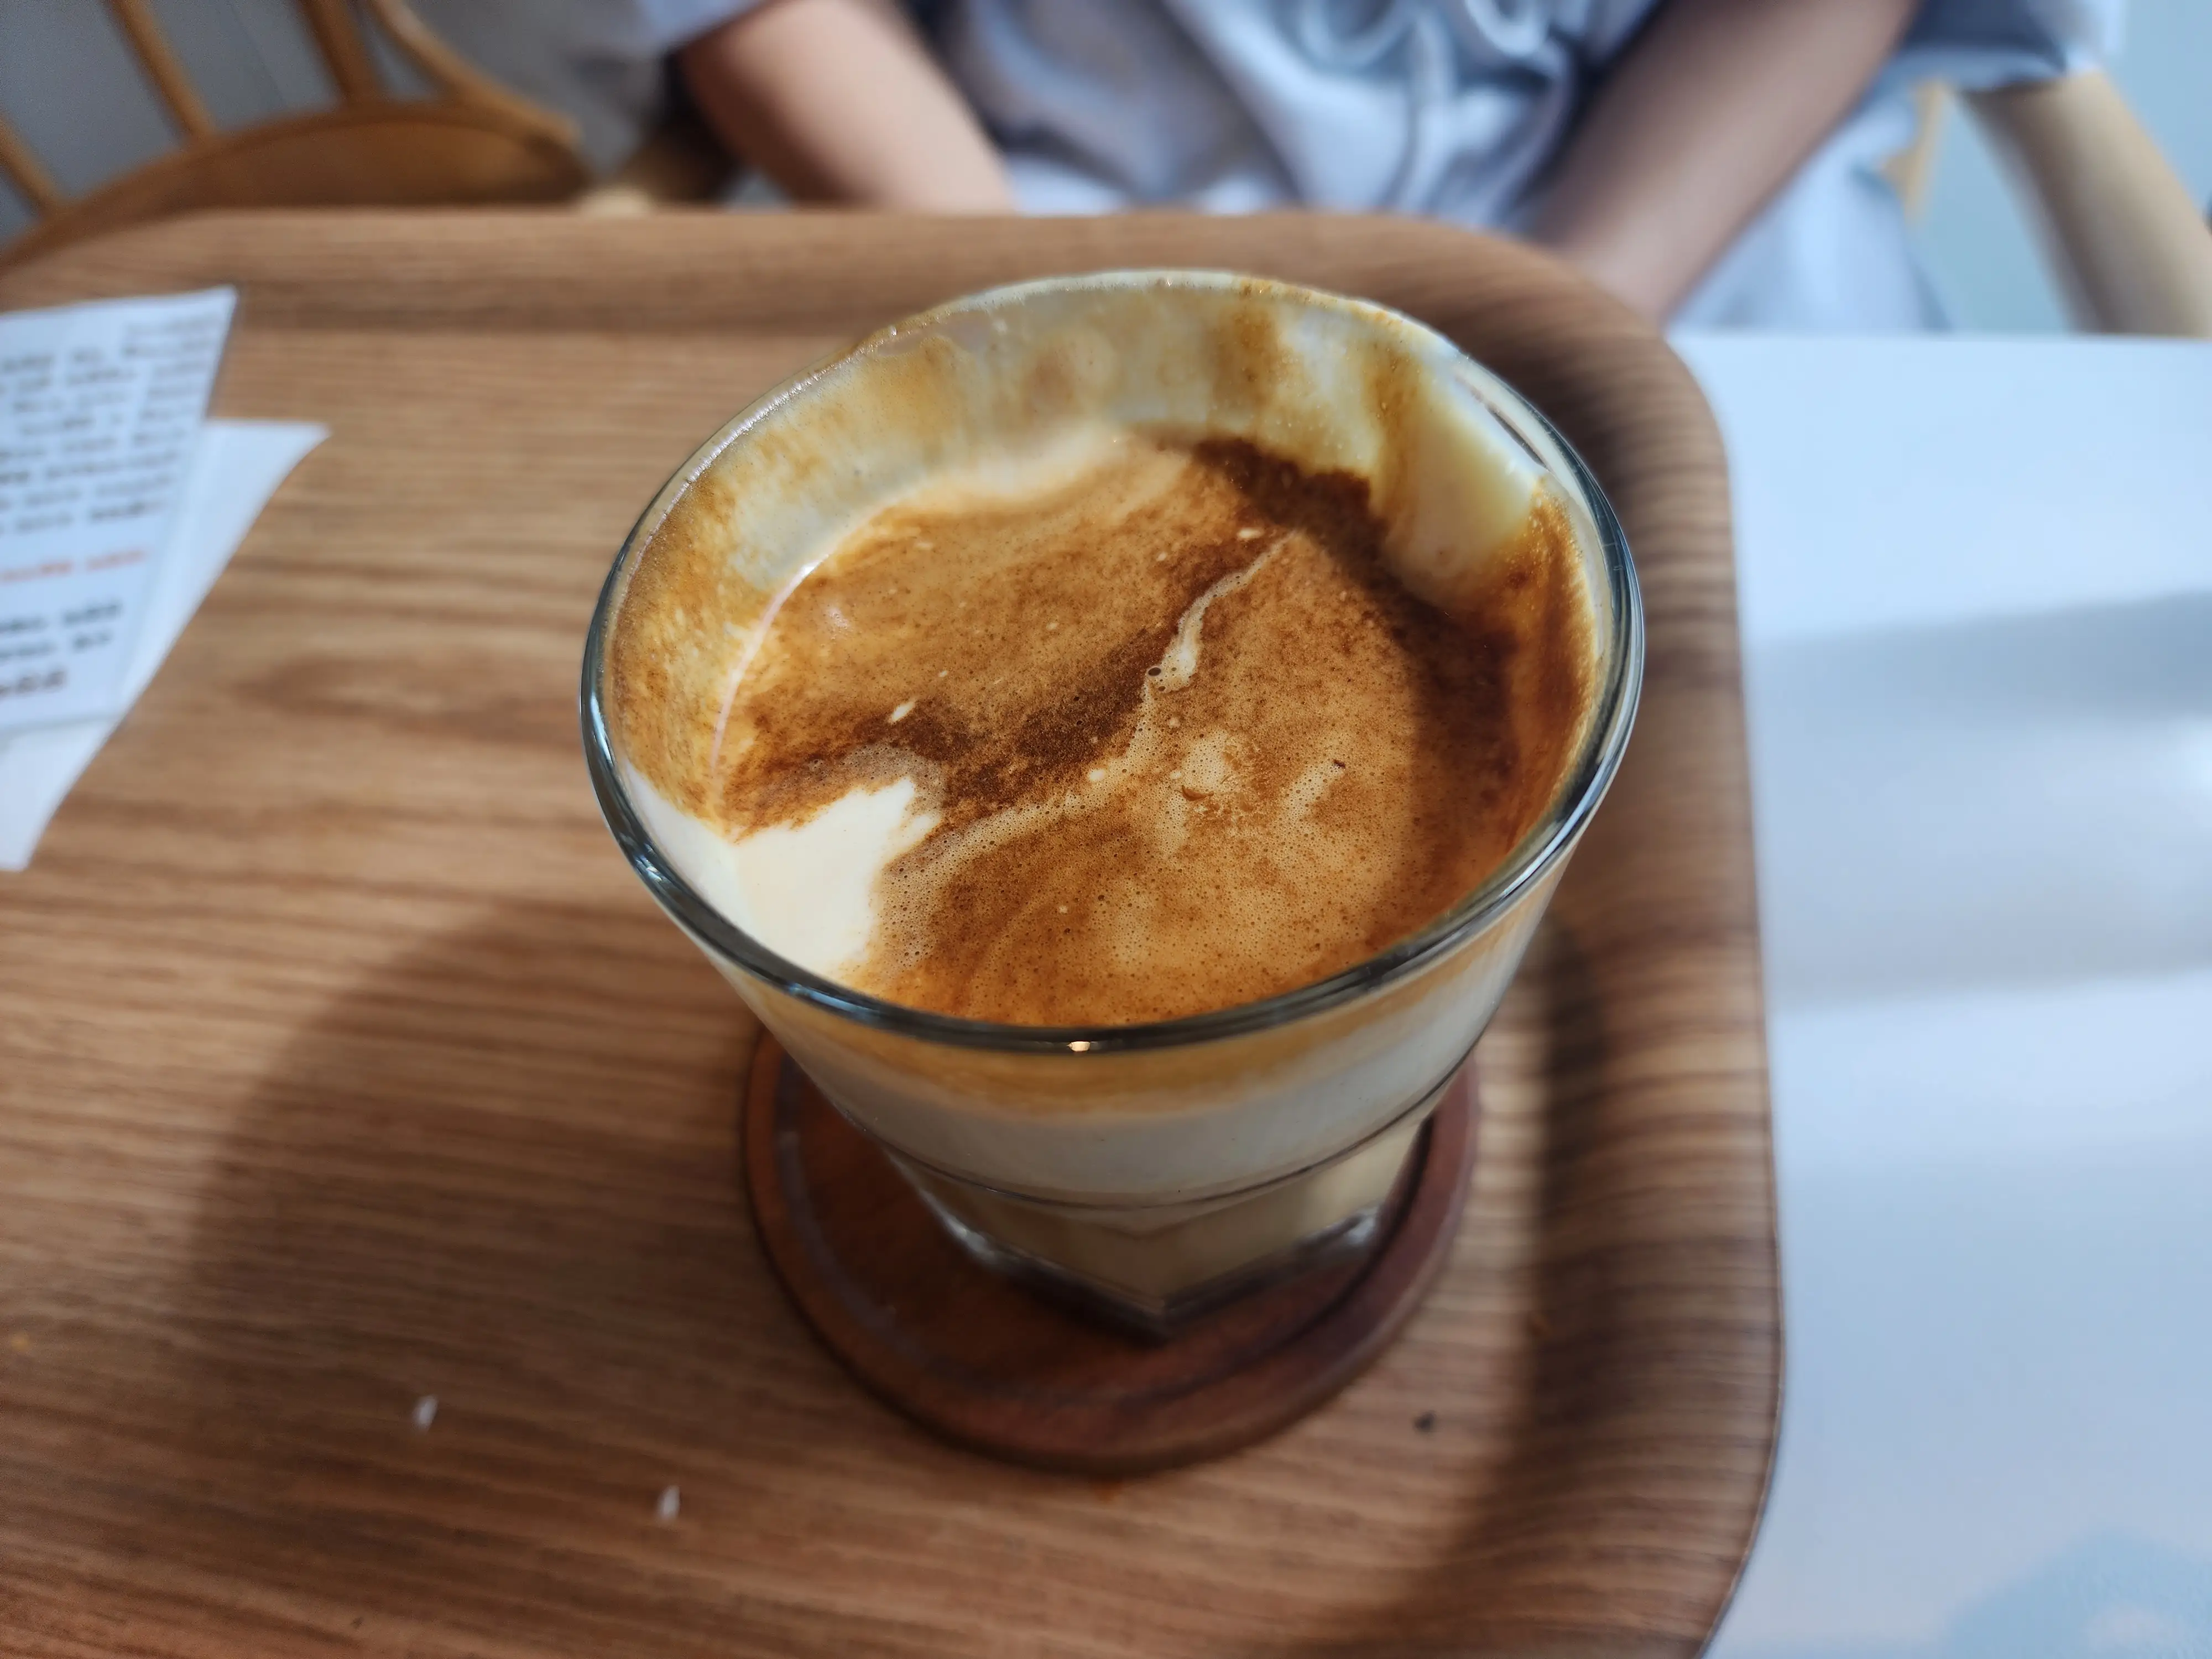 만천하 스카이워크 전망대 근처 카페의 대표 메뉴인 땅콩커피의 사진입니다. 땅콩크림이 맛있게 올려져 있습니다.